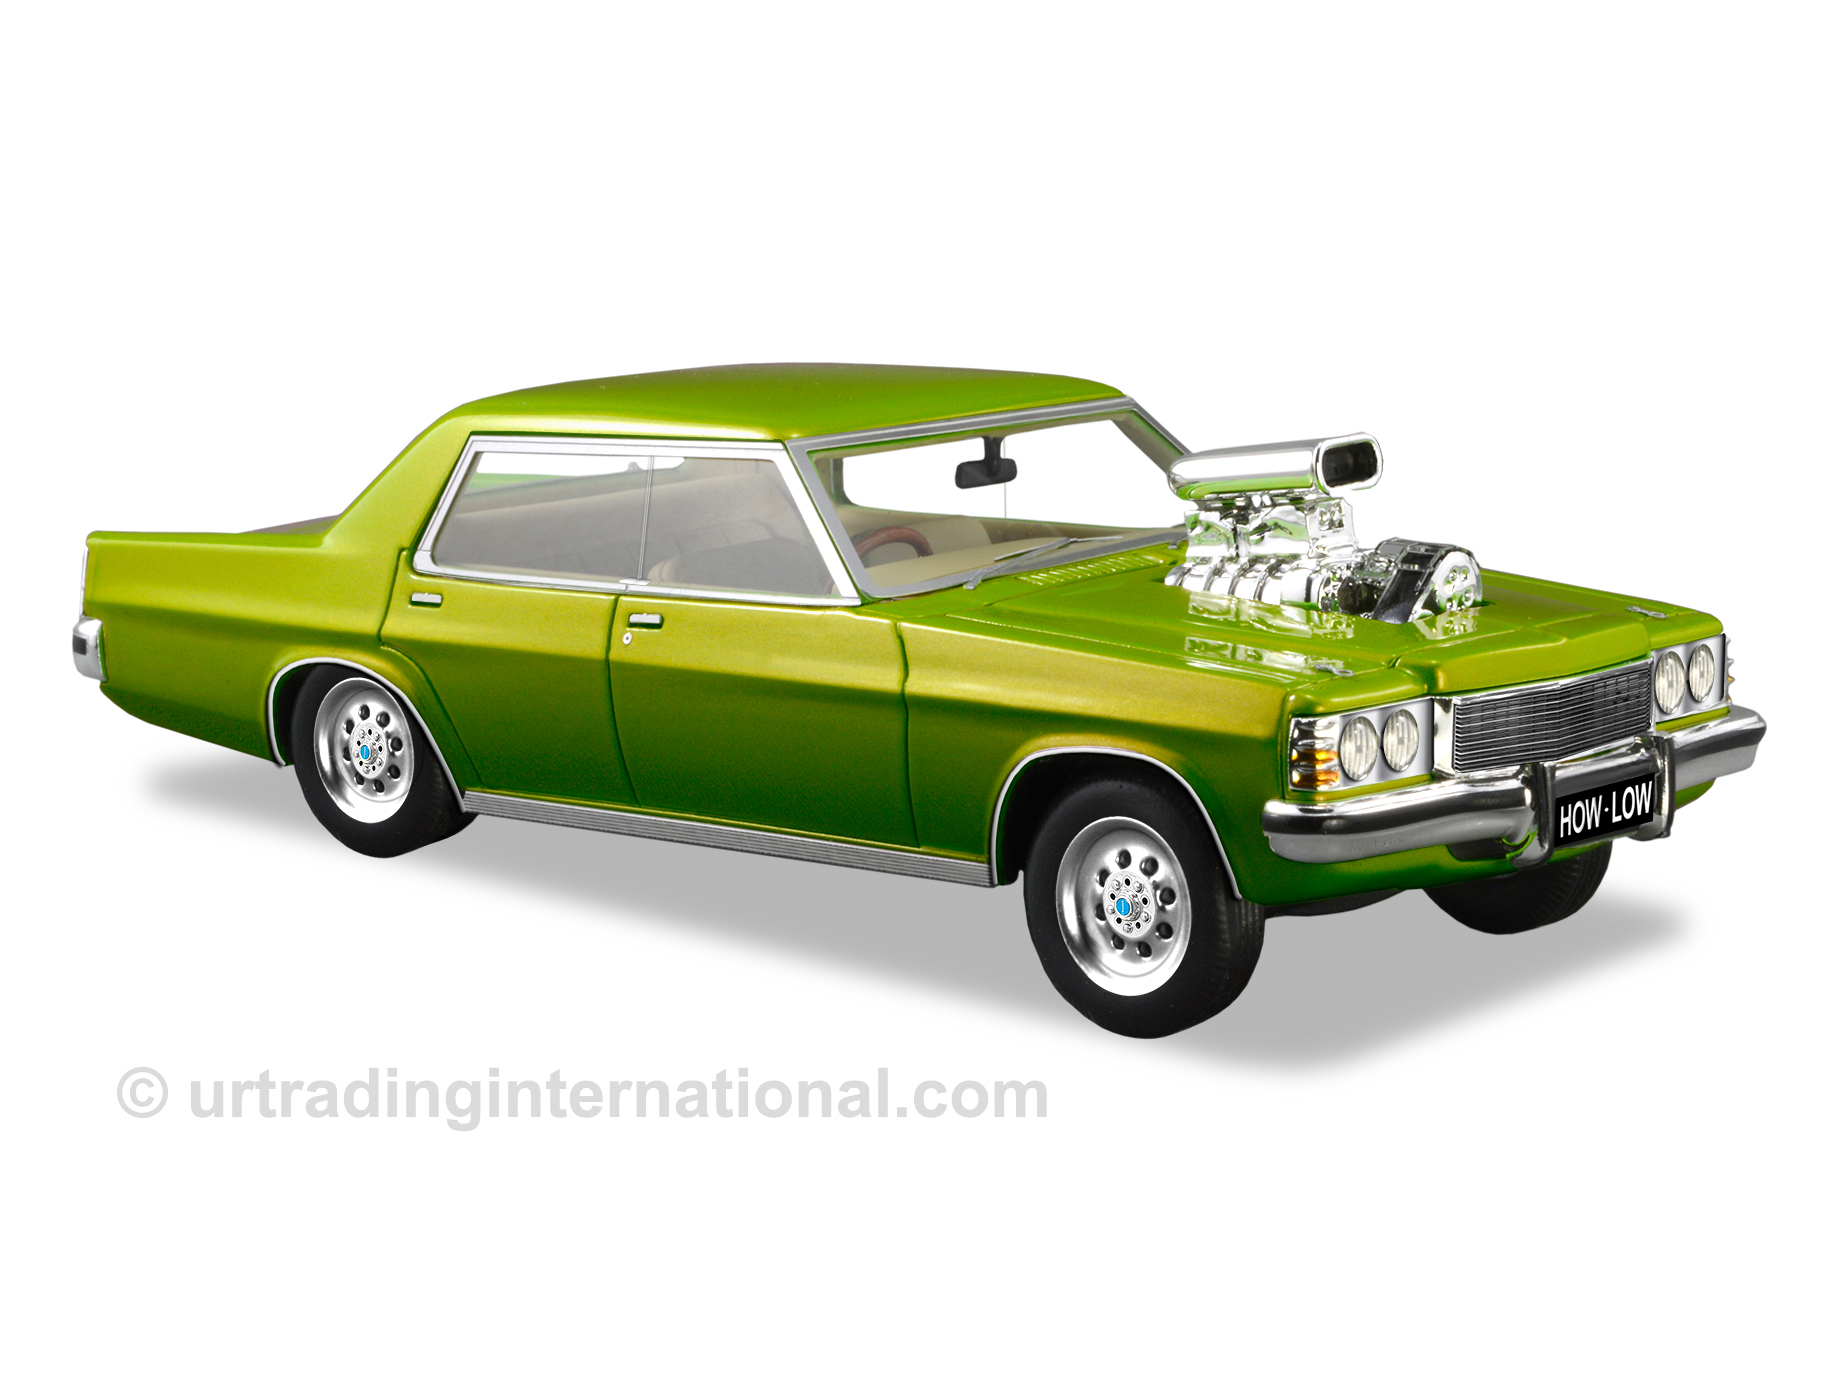 Customised 1977 Holden HZ Statesman – Green Metallic